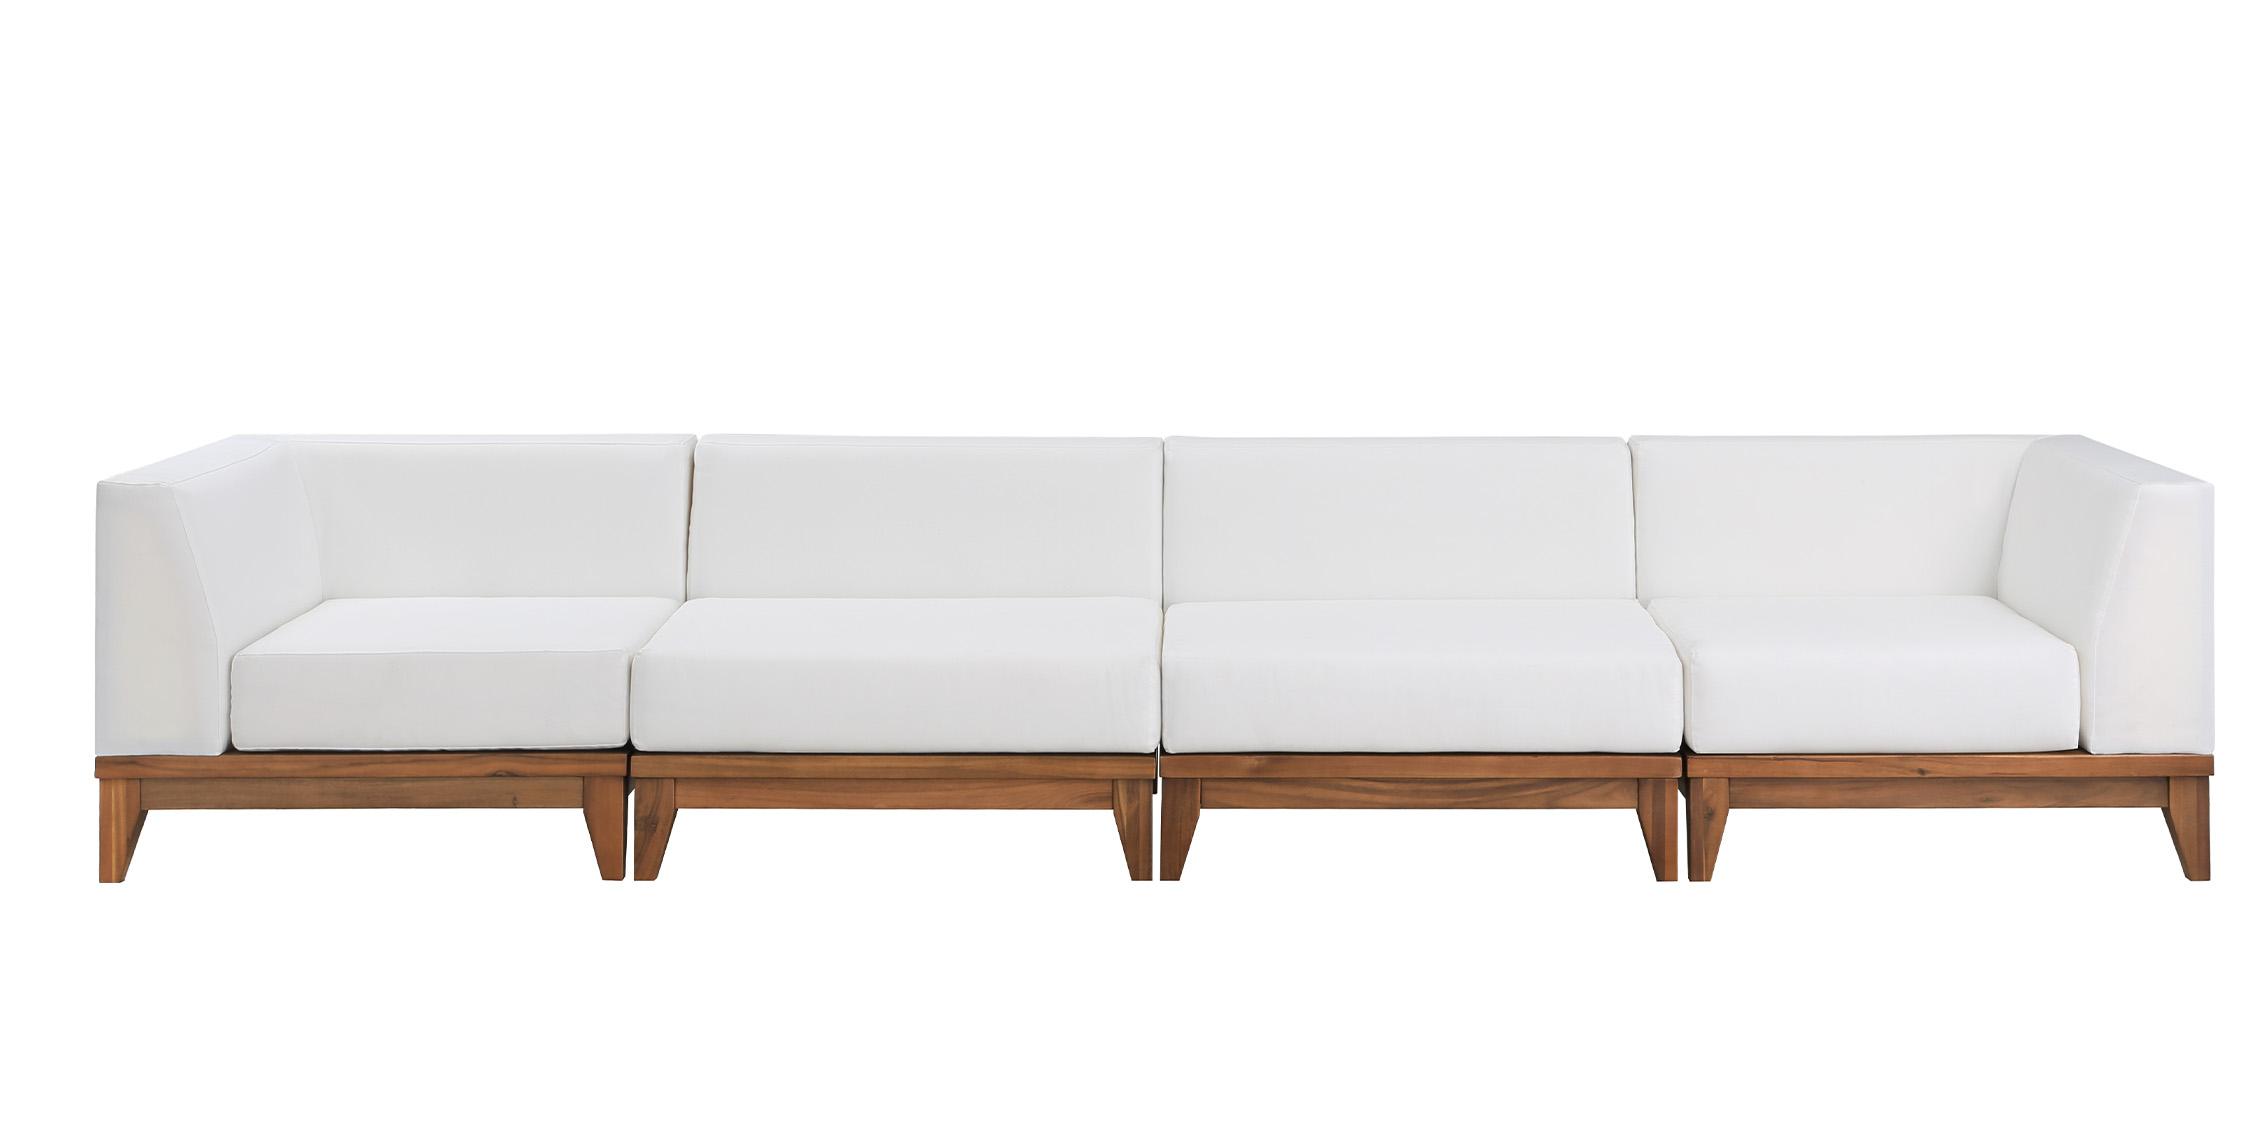 

    
Meridian Furniture RIO 389White-S131 Patio Moular Sofa Off-White/Brown 389White-S131
